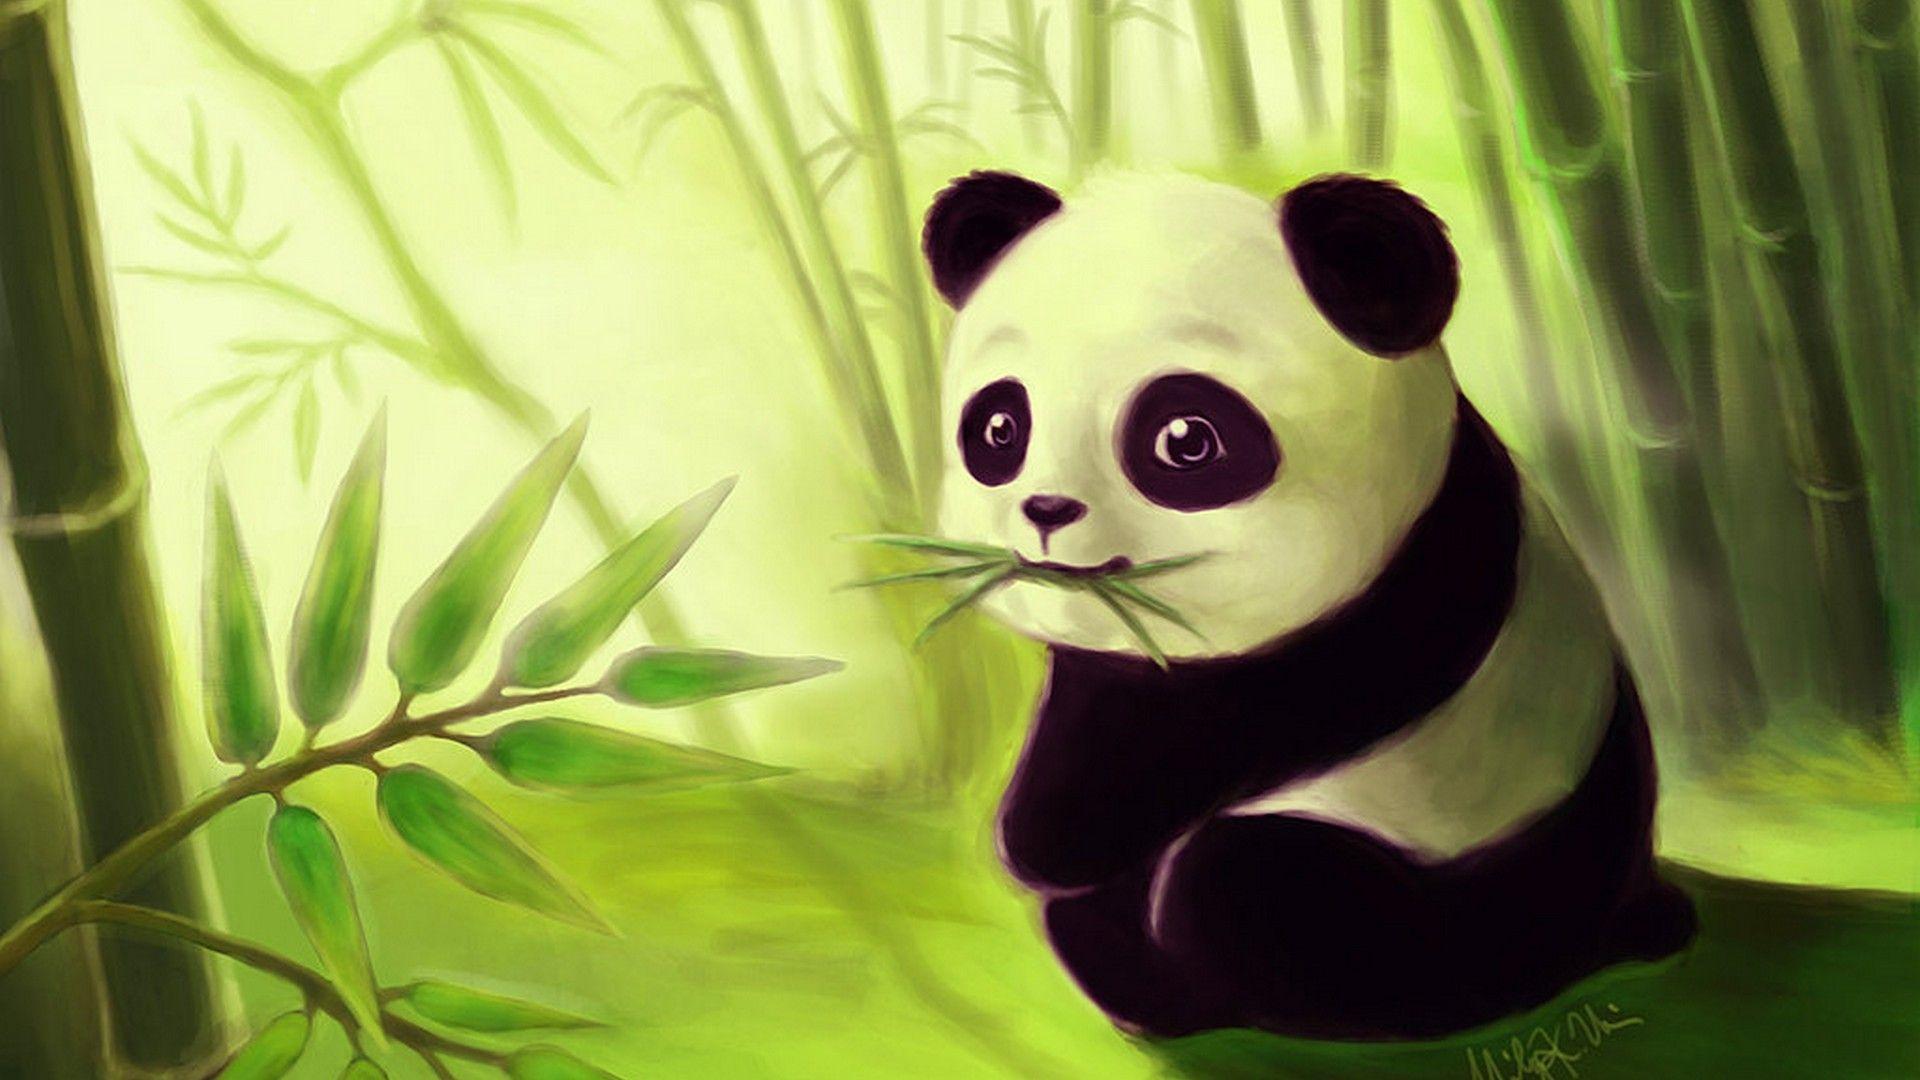 Cute Panda Cartoon Wallpapers - Wallpaper Cave